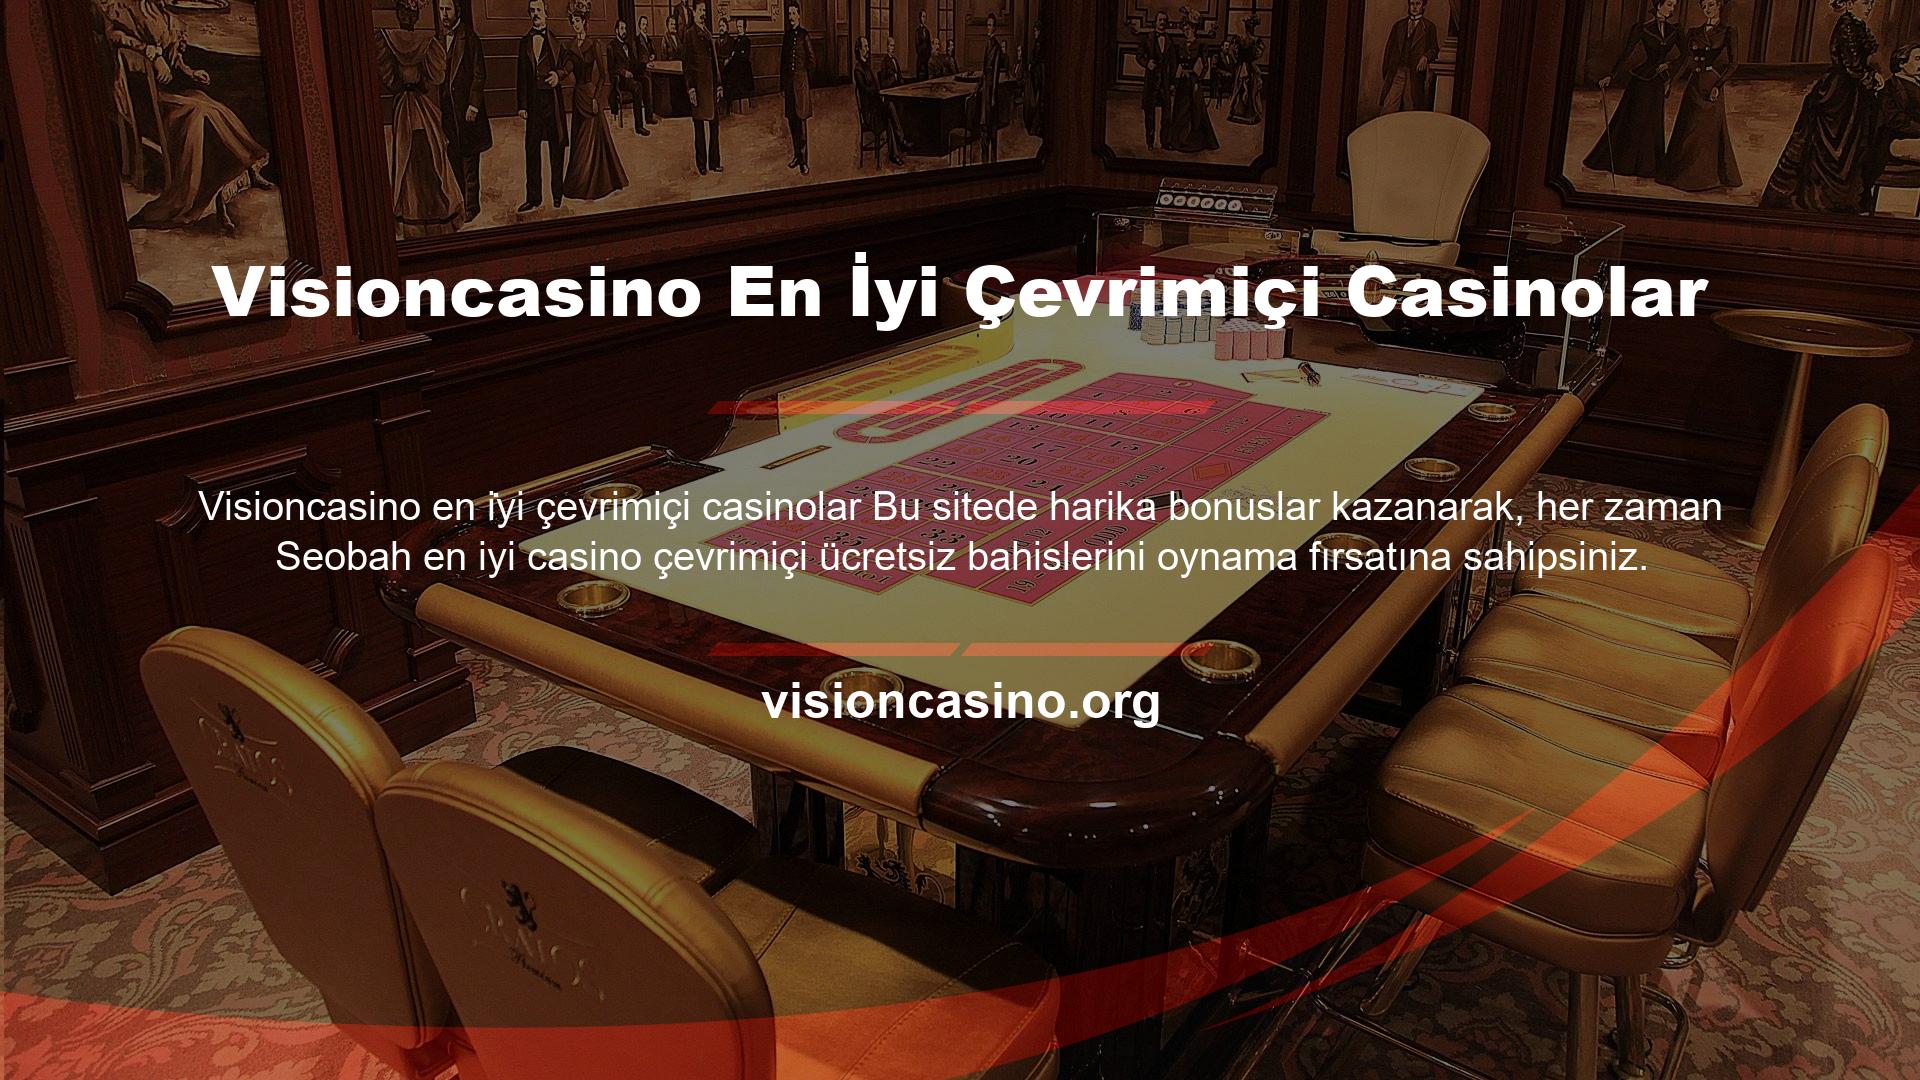 Visioncasino en iyi çevrimiçi casinolar